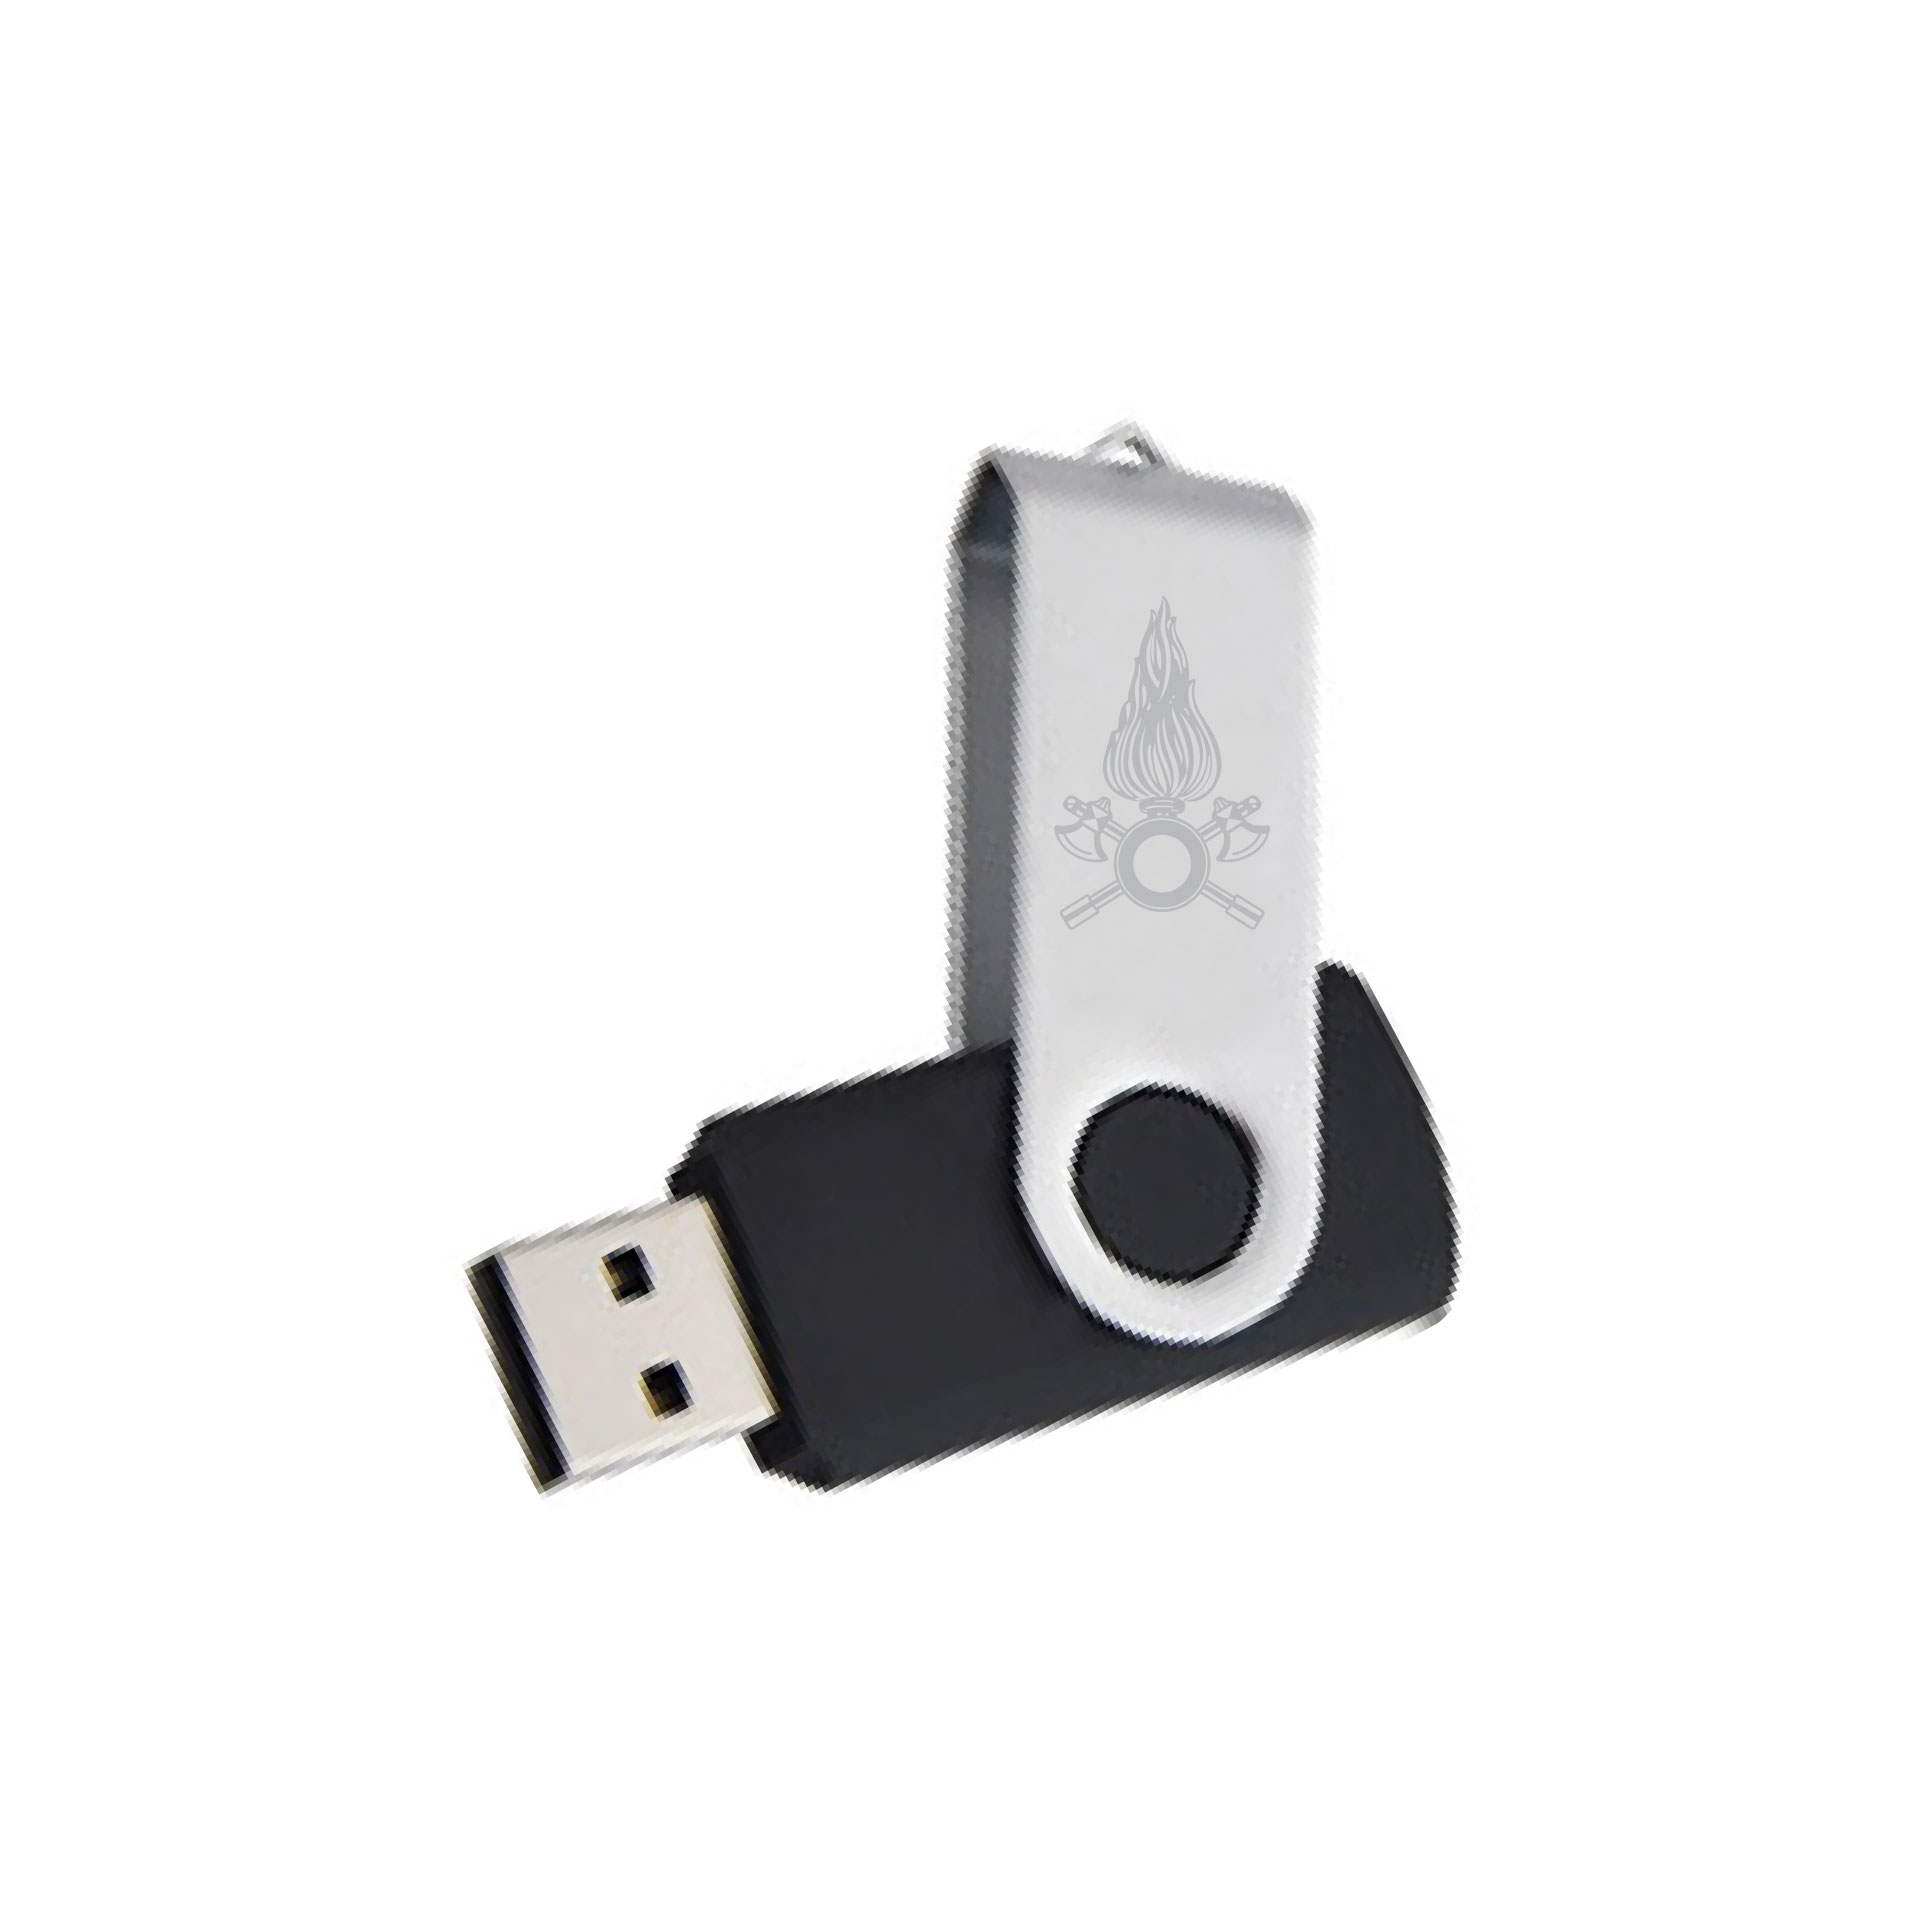 CHIAVETTA USB 8 GB VIGILI DEL FUOCO CON MECCANISMO A ROTAZIONE DIMENSION